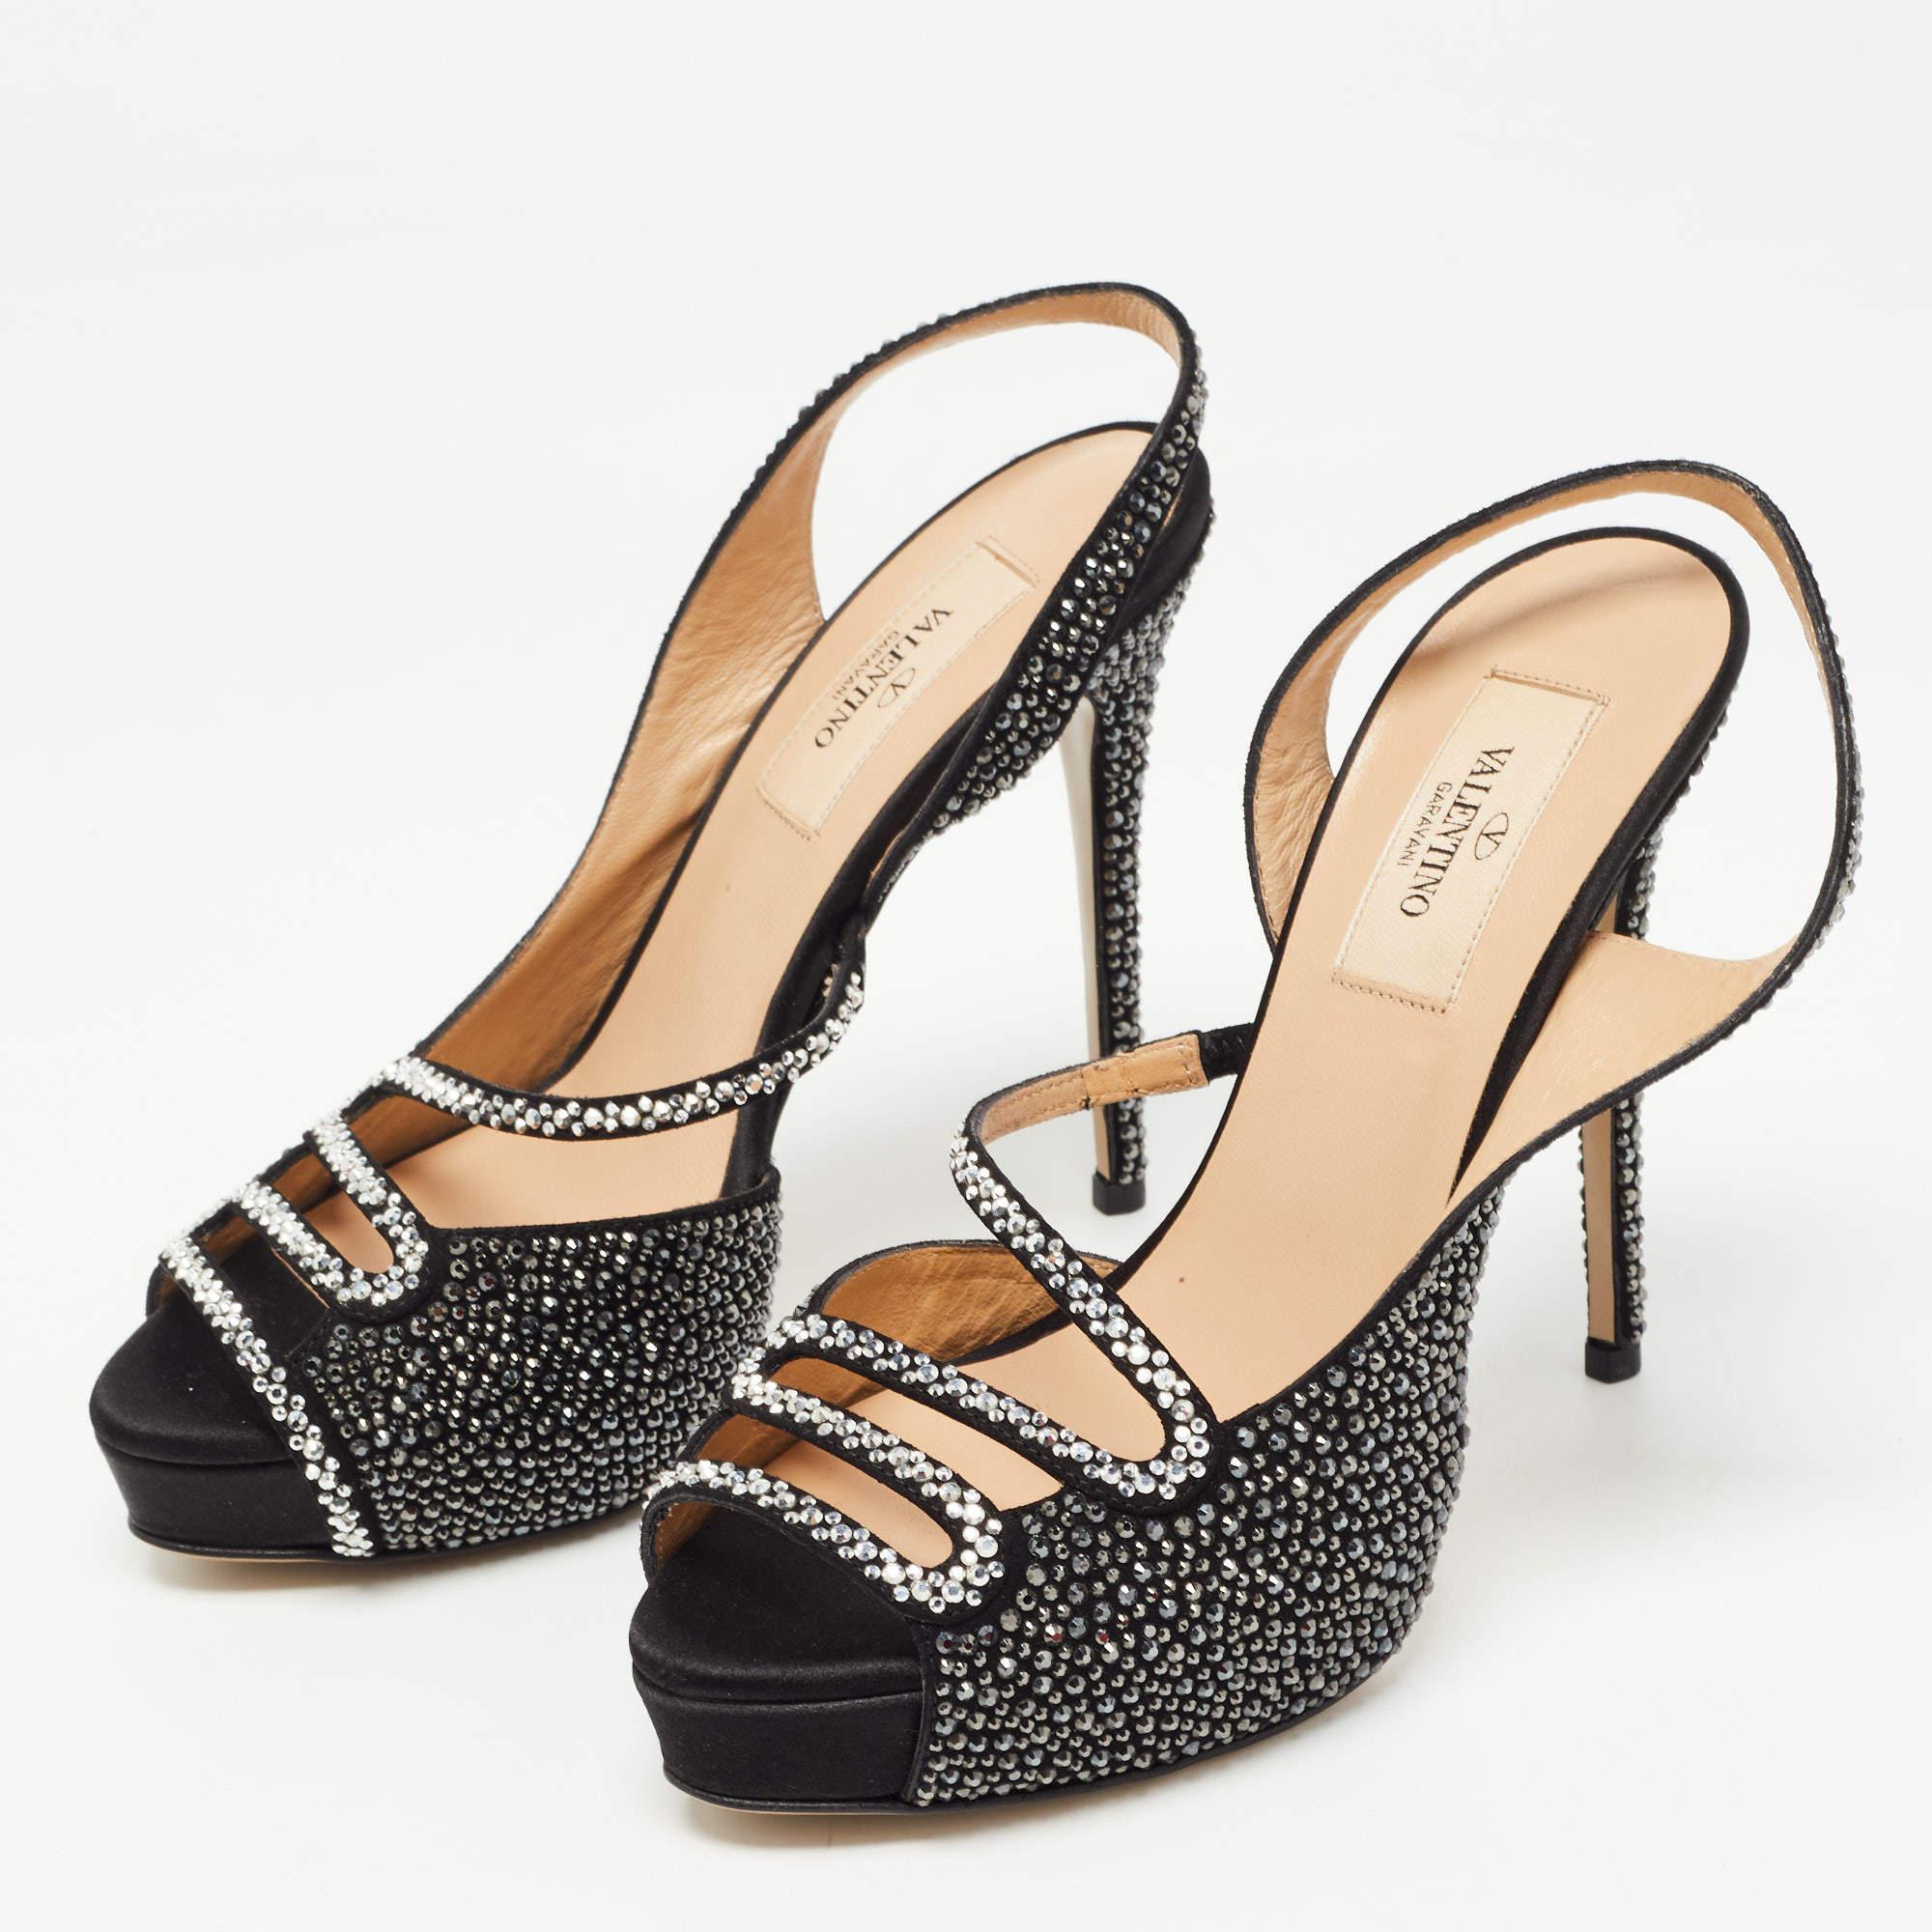 Valentino Black Suede and Crystal Embellished Slingback Sandals Size 36 2